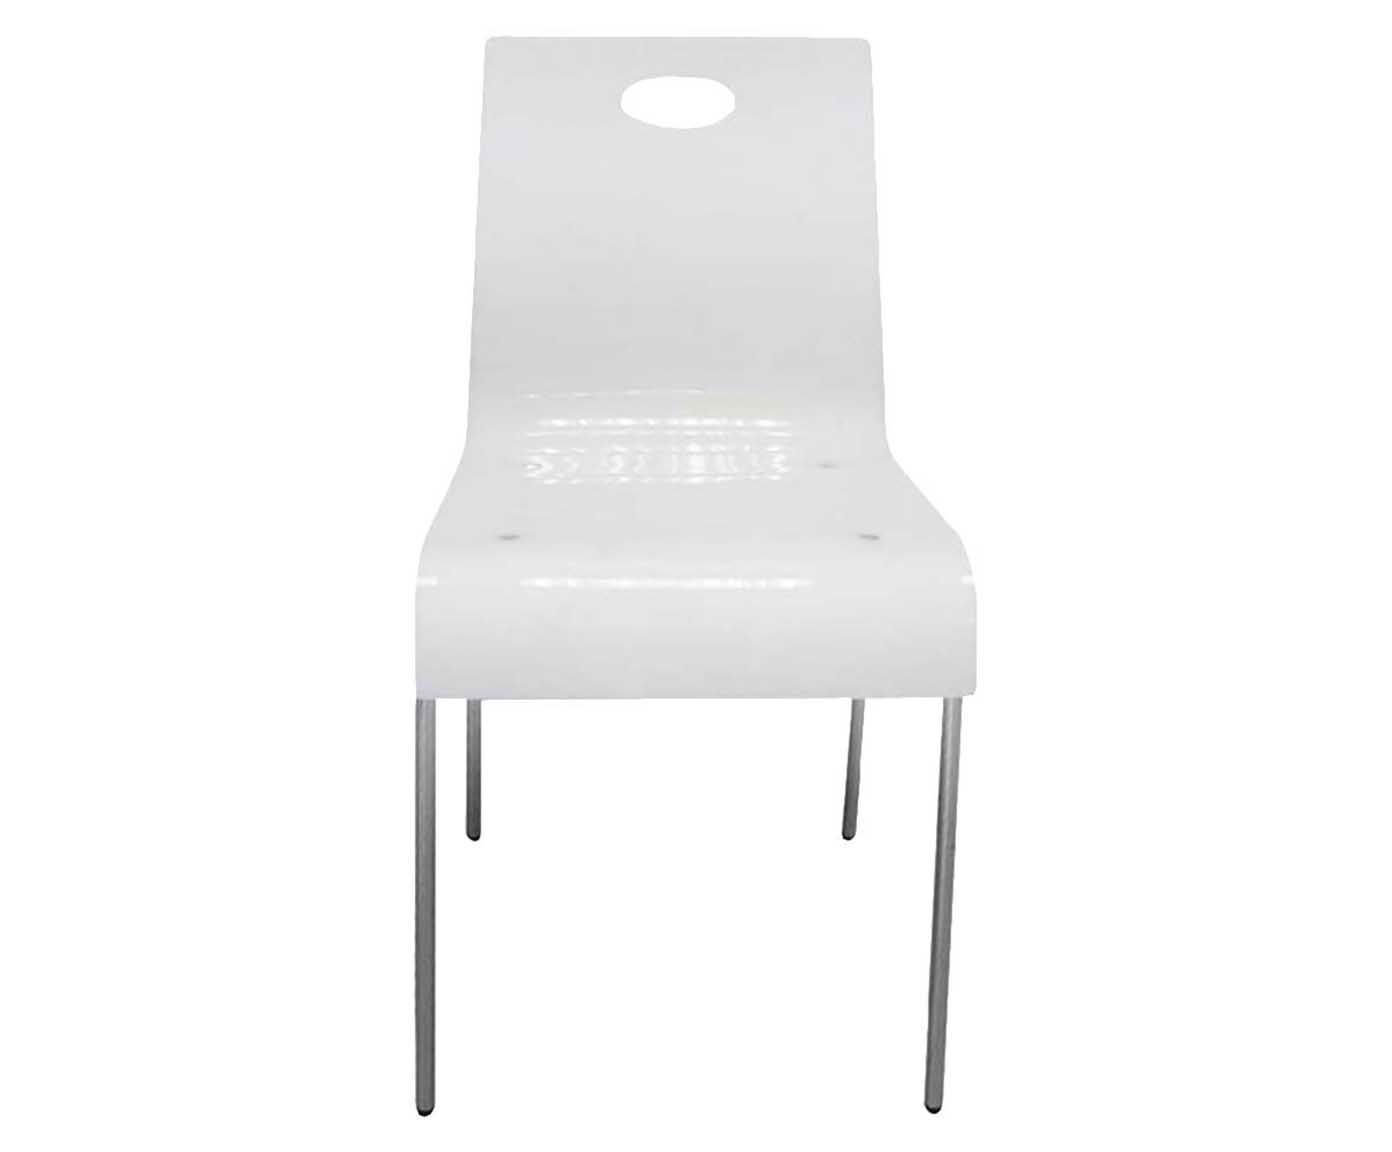 Cadeira deusteck - union | Westwing.com.br